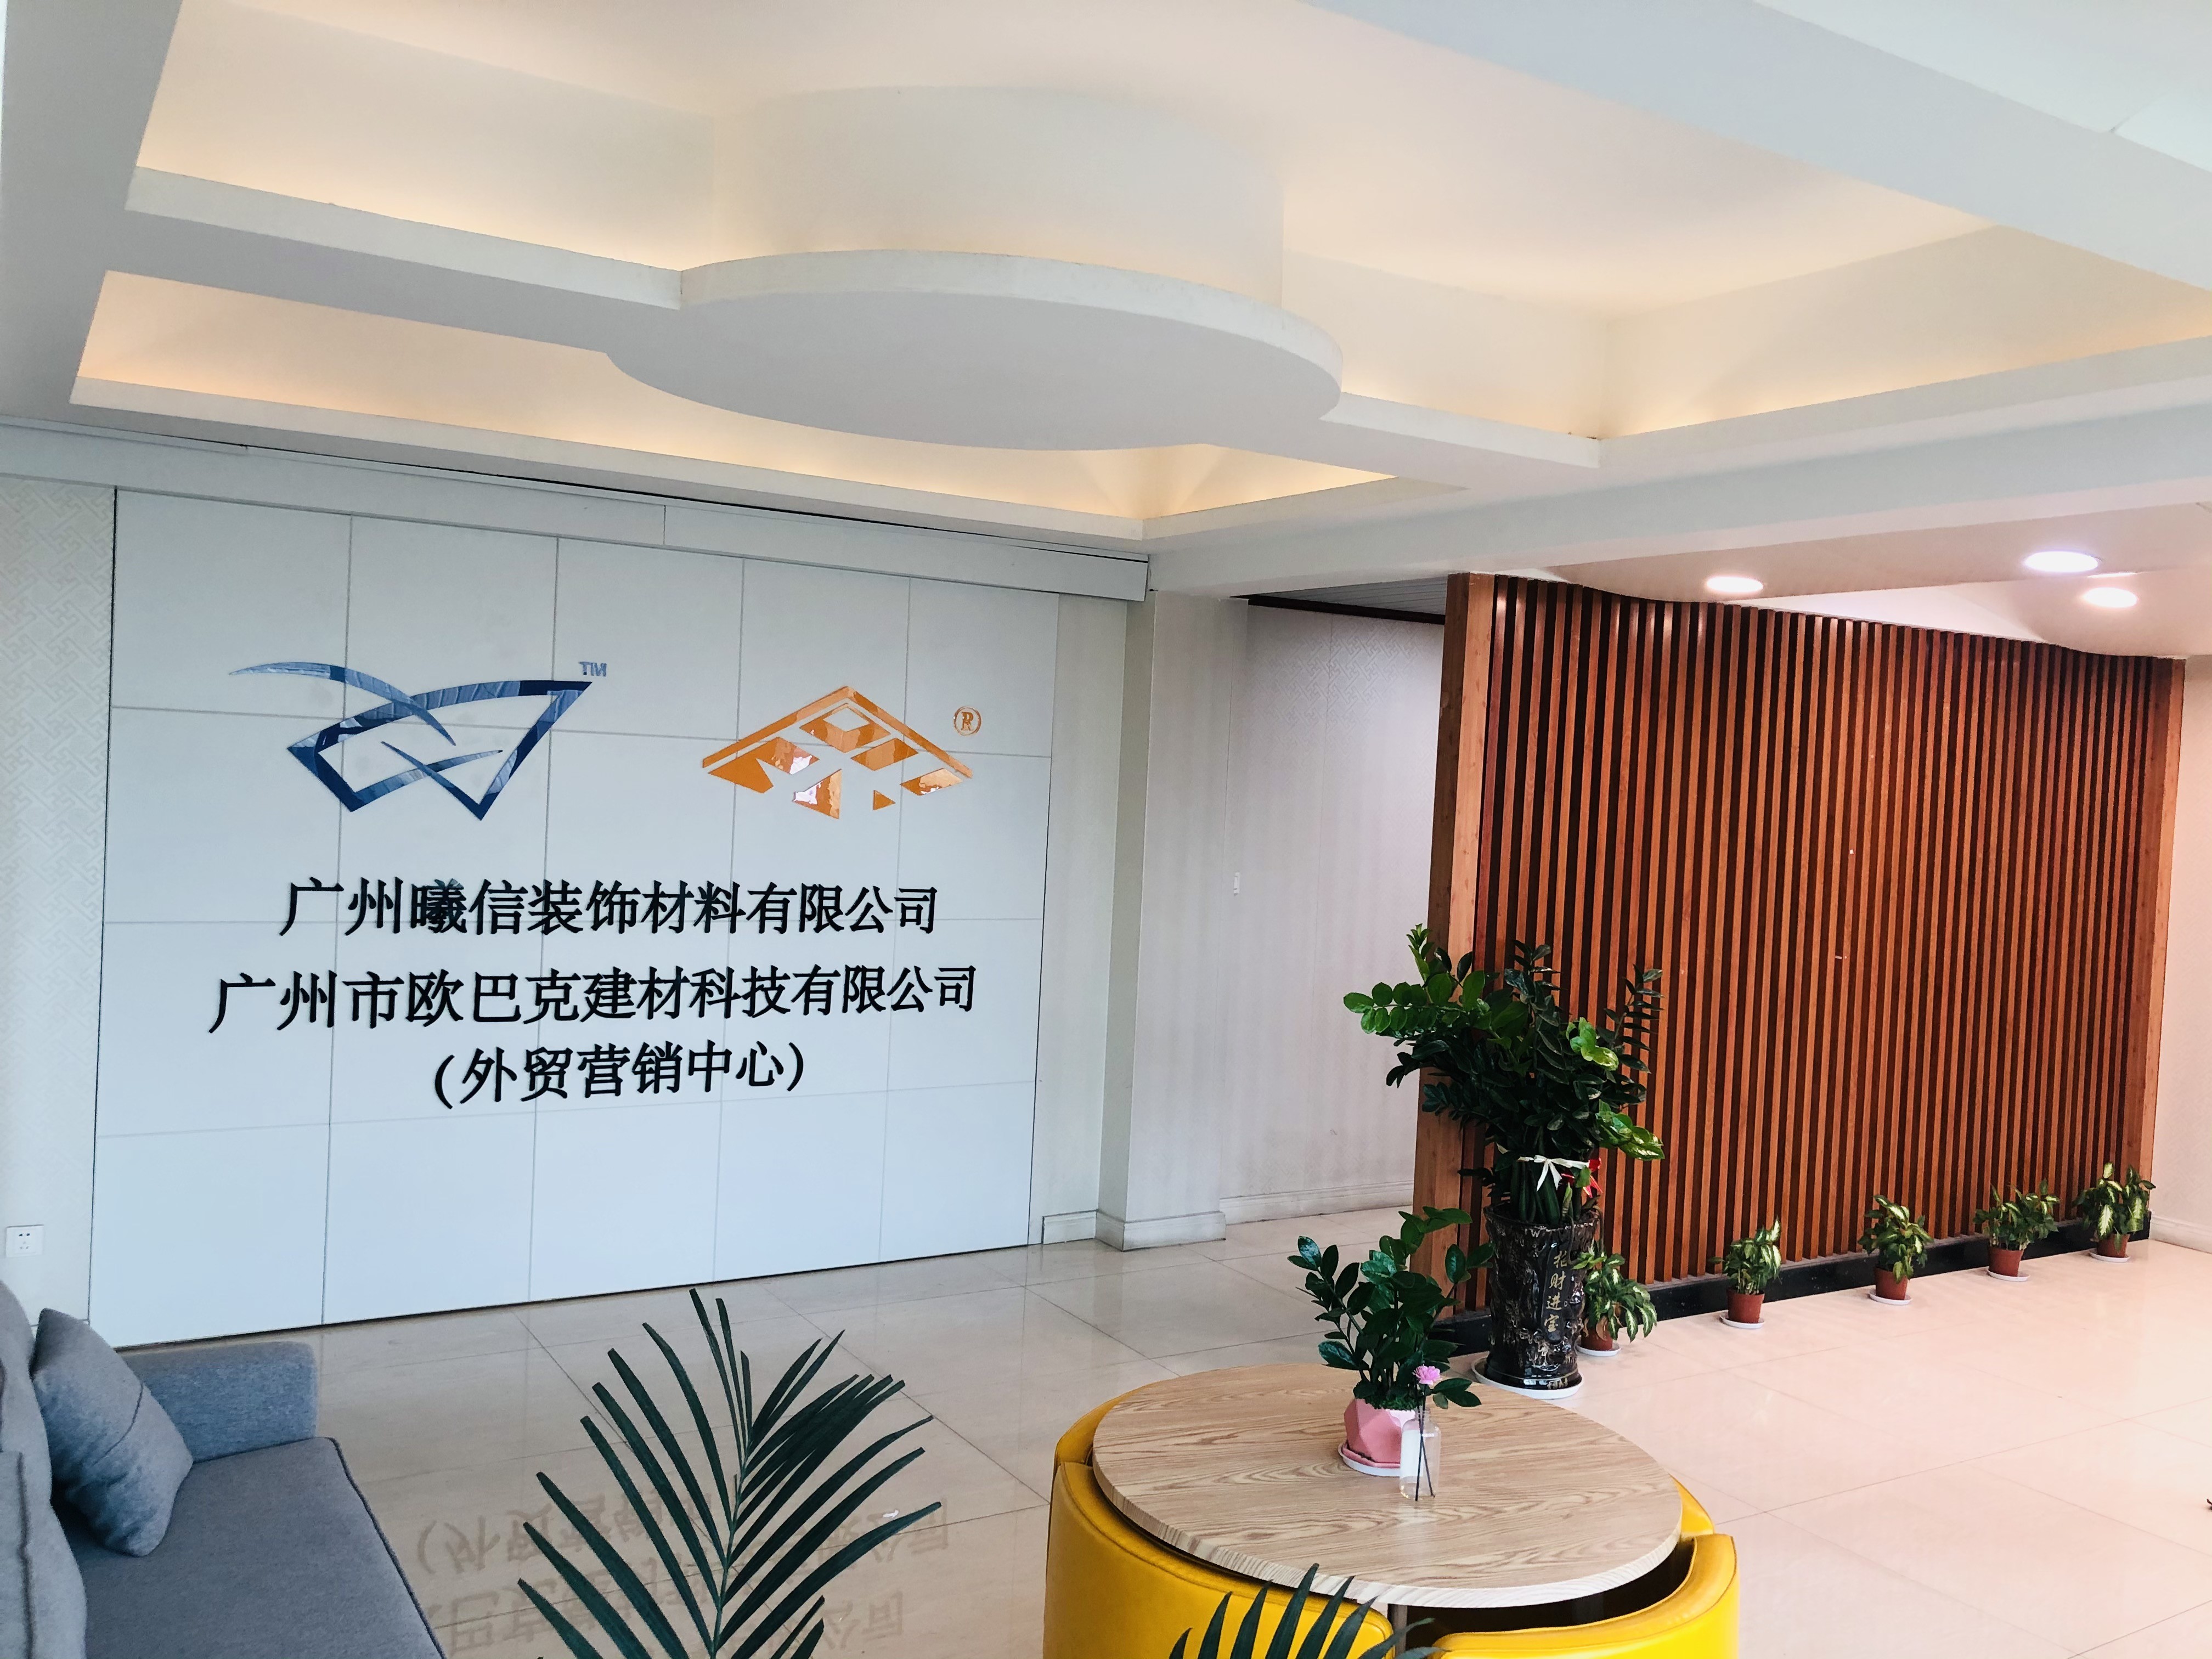 চীন Guangzhou Season Decoration Materials Co., Ltd. সংস্থা প্রোফাইল